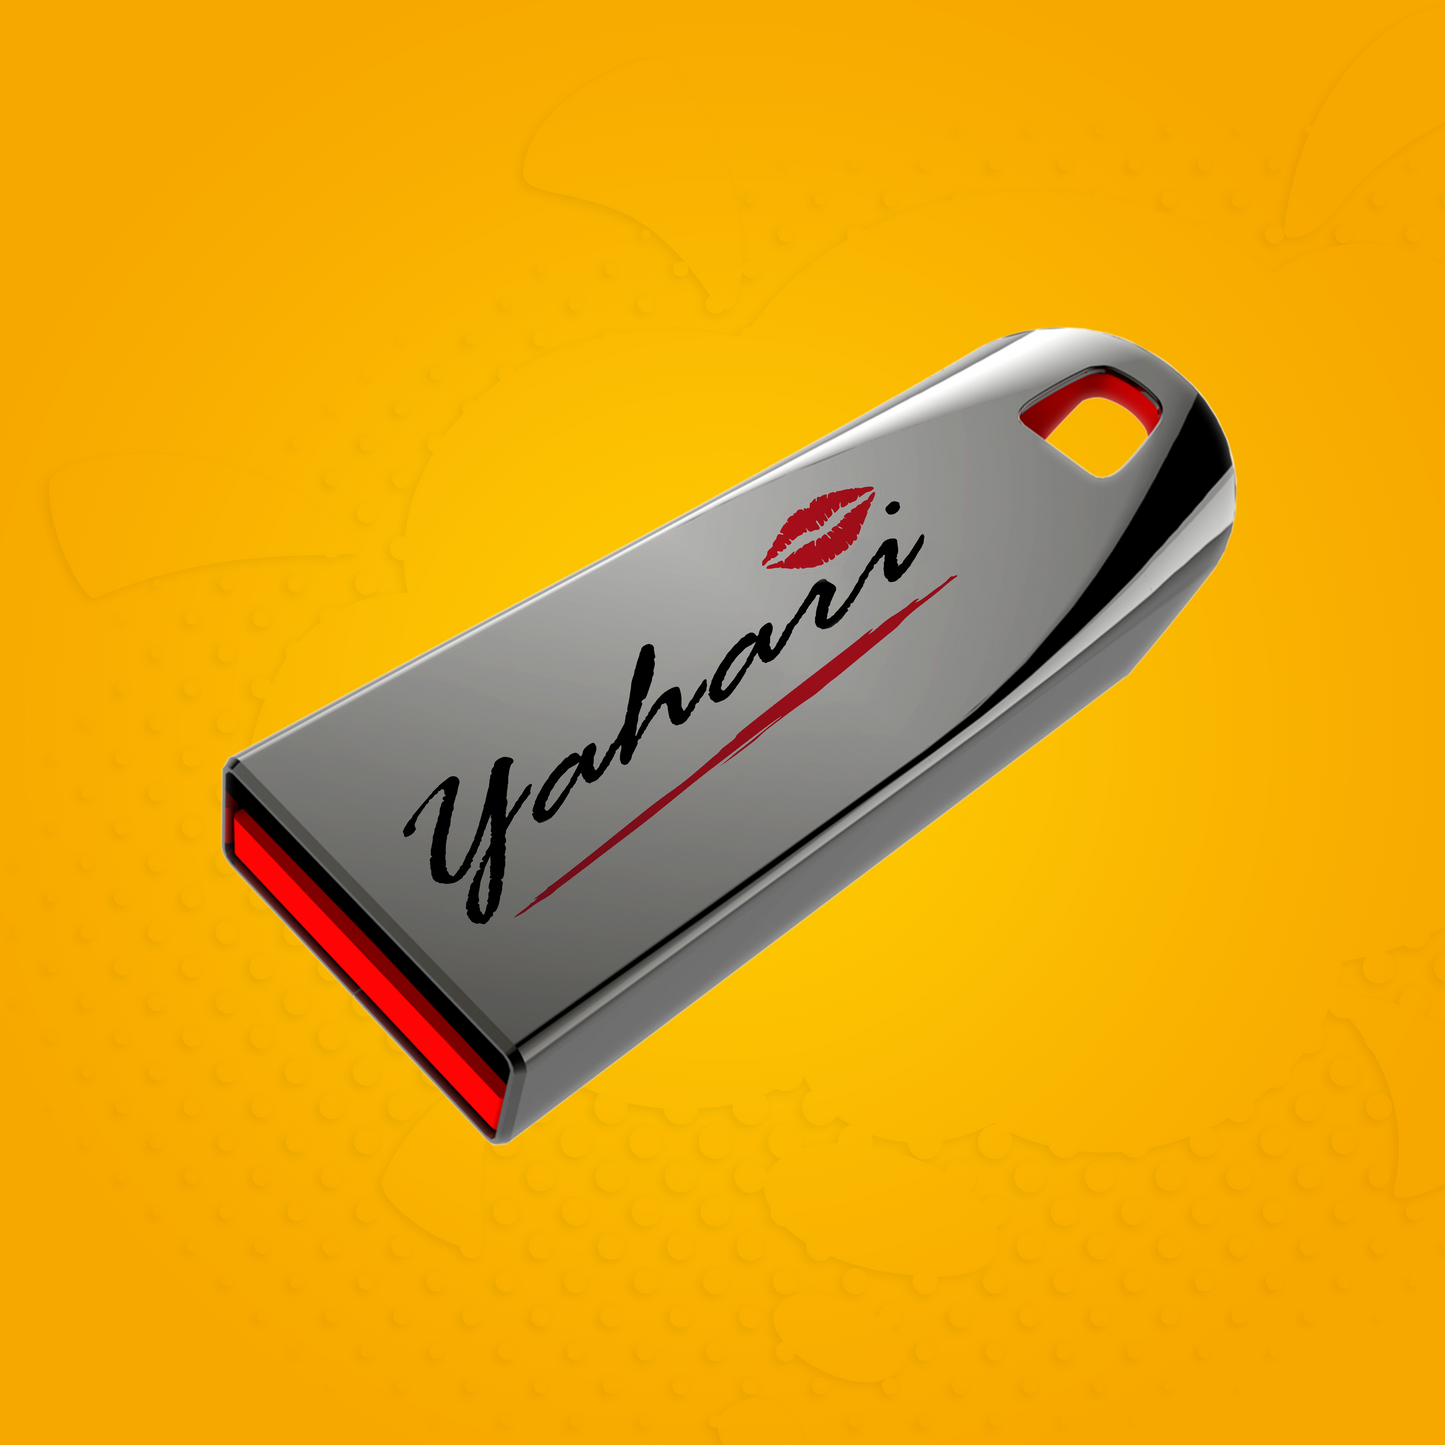 Memoria USB "Colección Yahari"